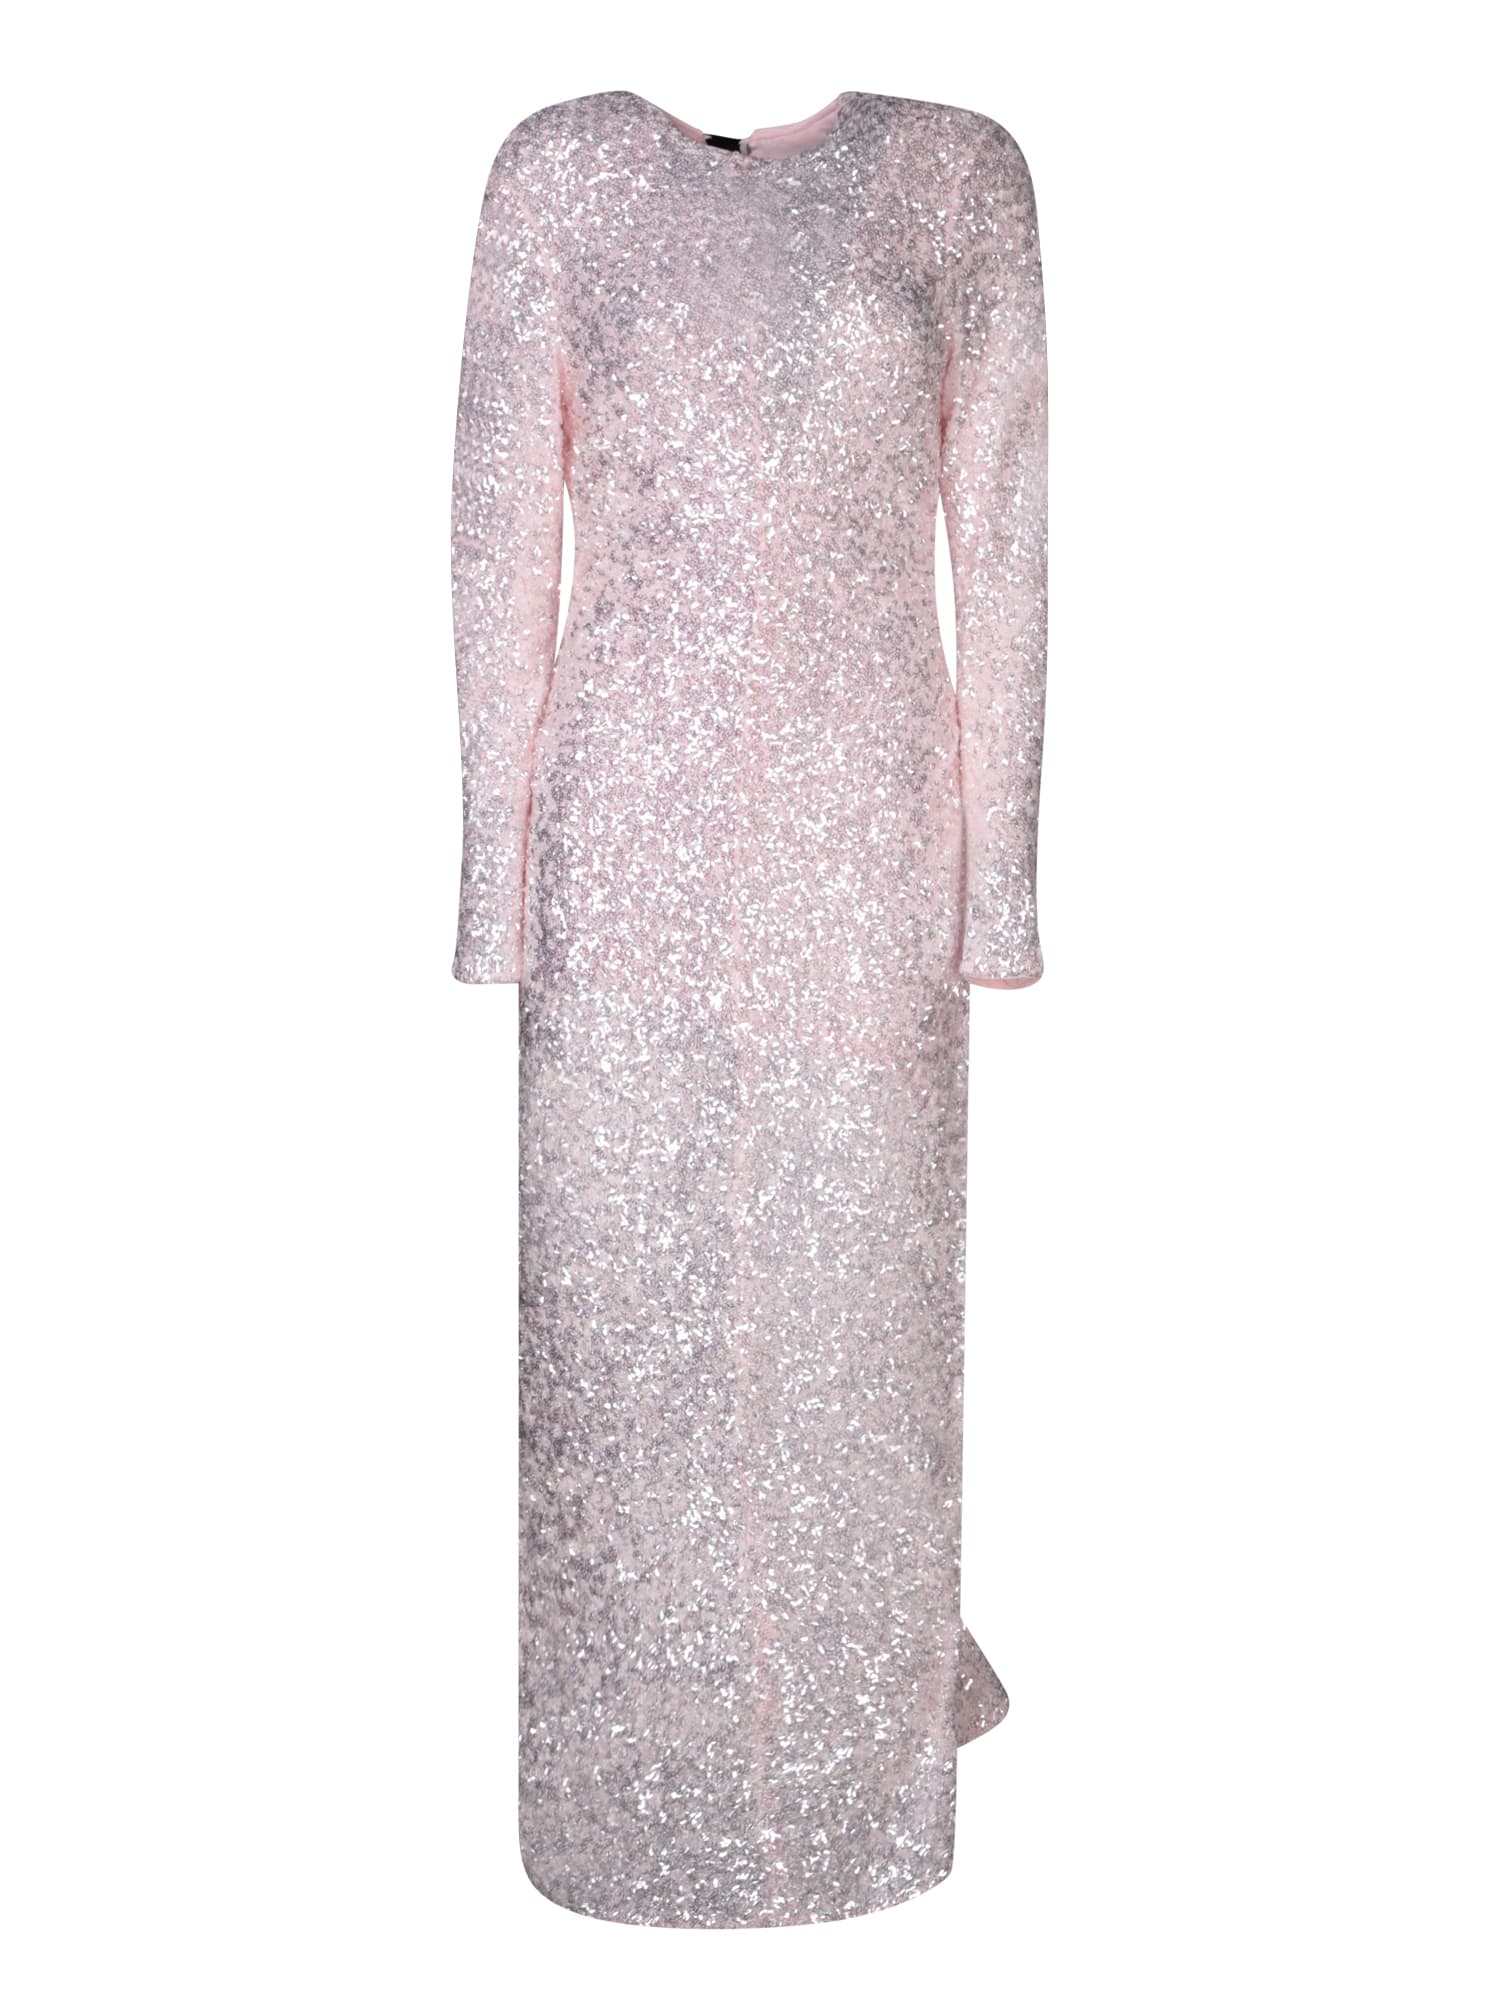 Powder Pink Sequin Maxi Dress